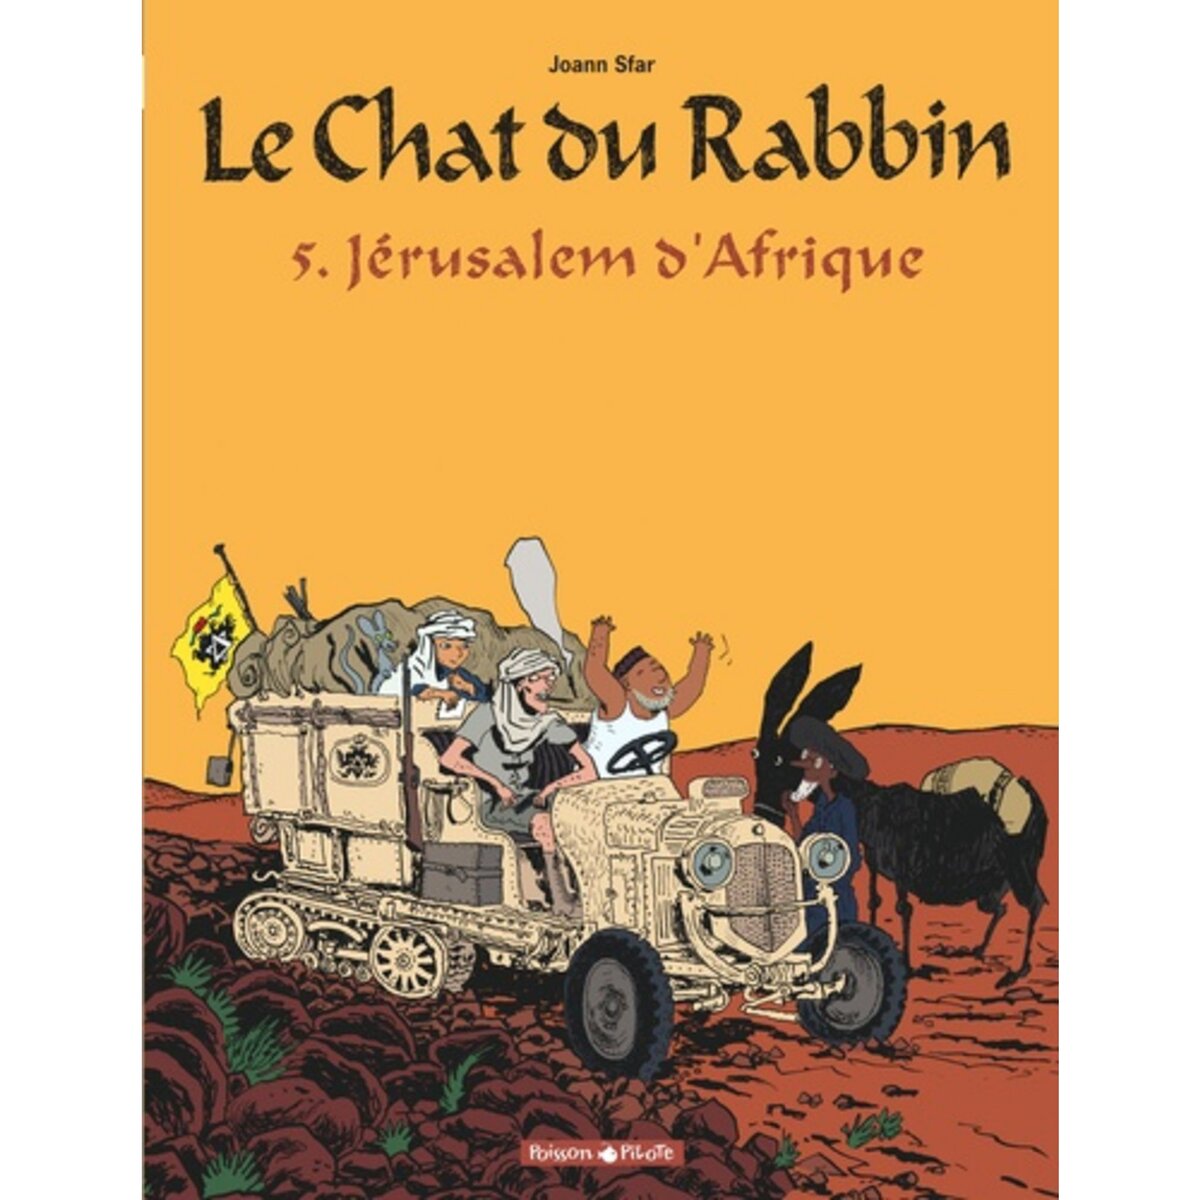  LE CHAT DU RABBIN TOME 5 : JERUSALEM D'AFRIQUE, Sfar Joann